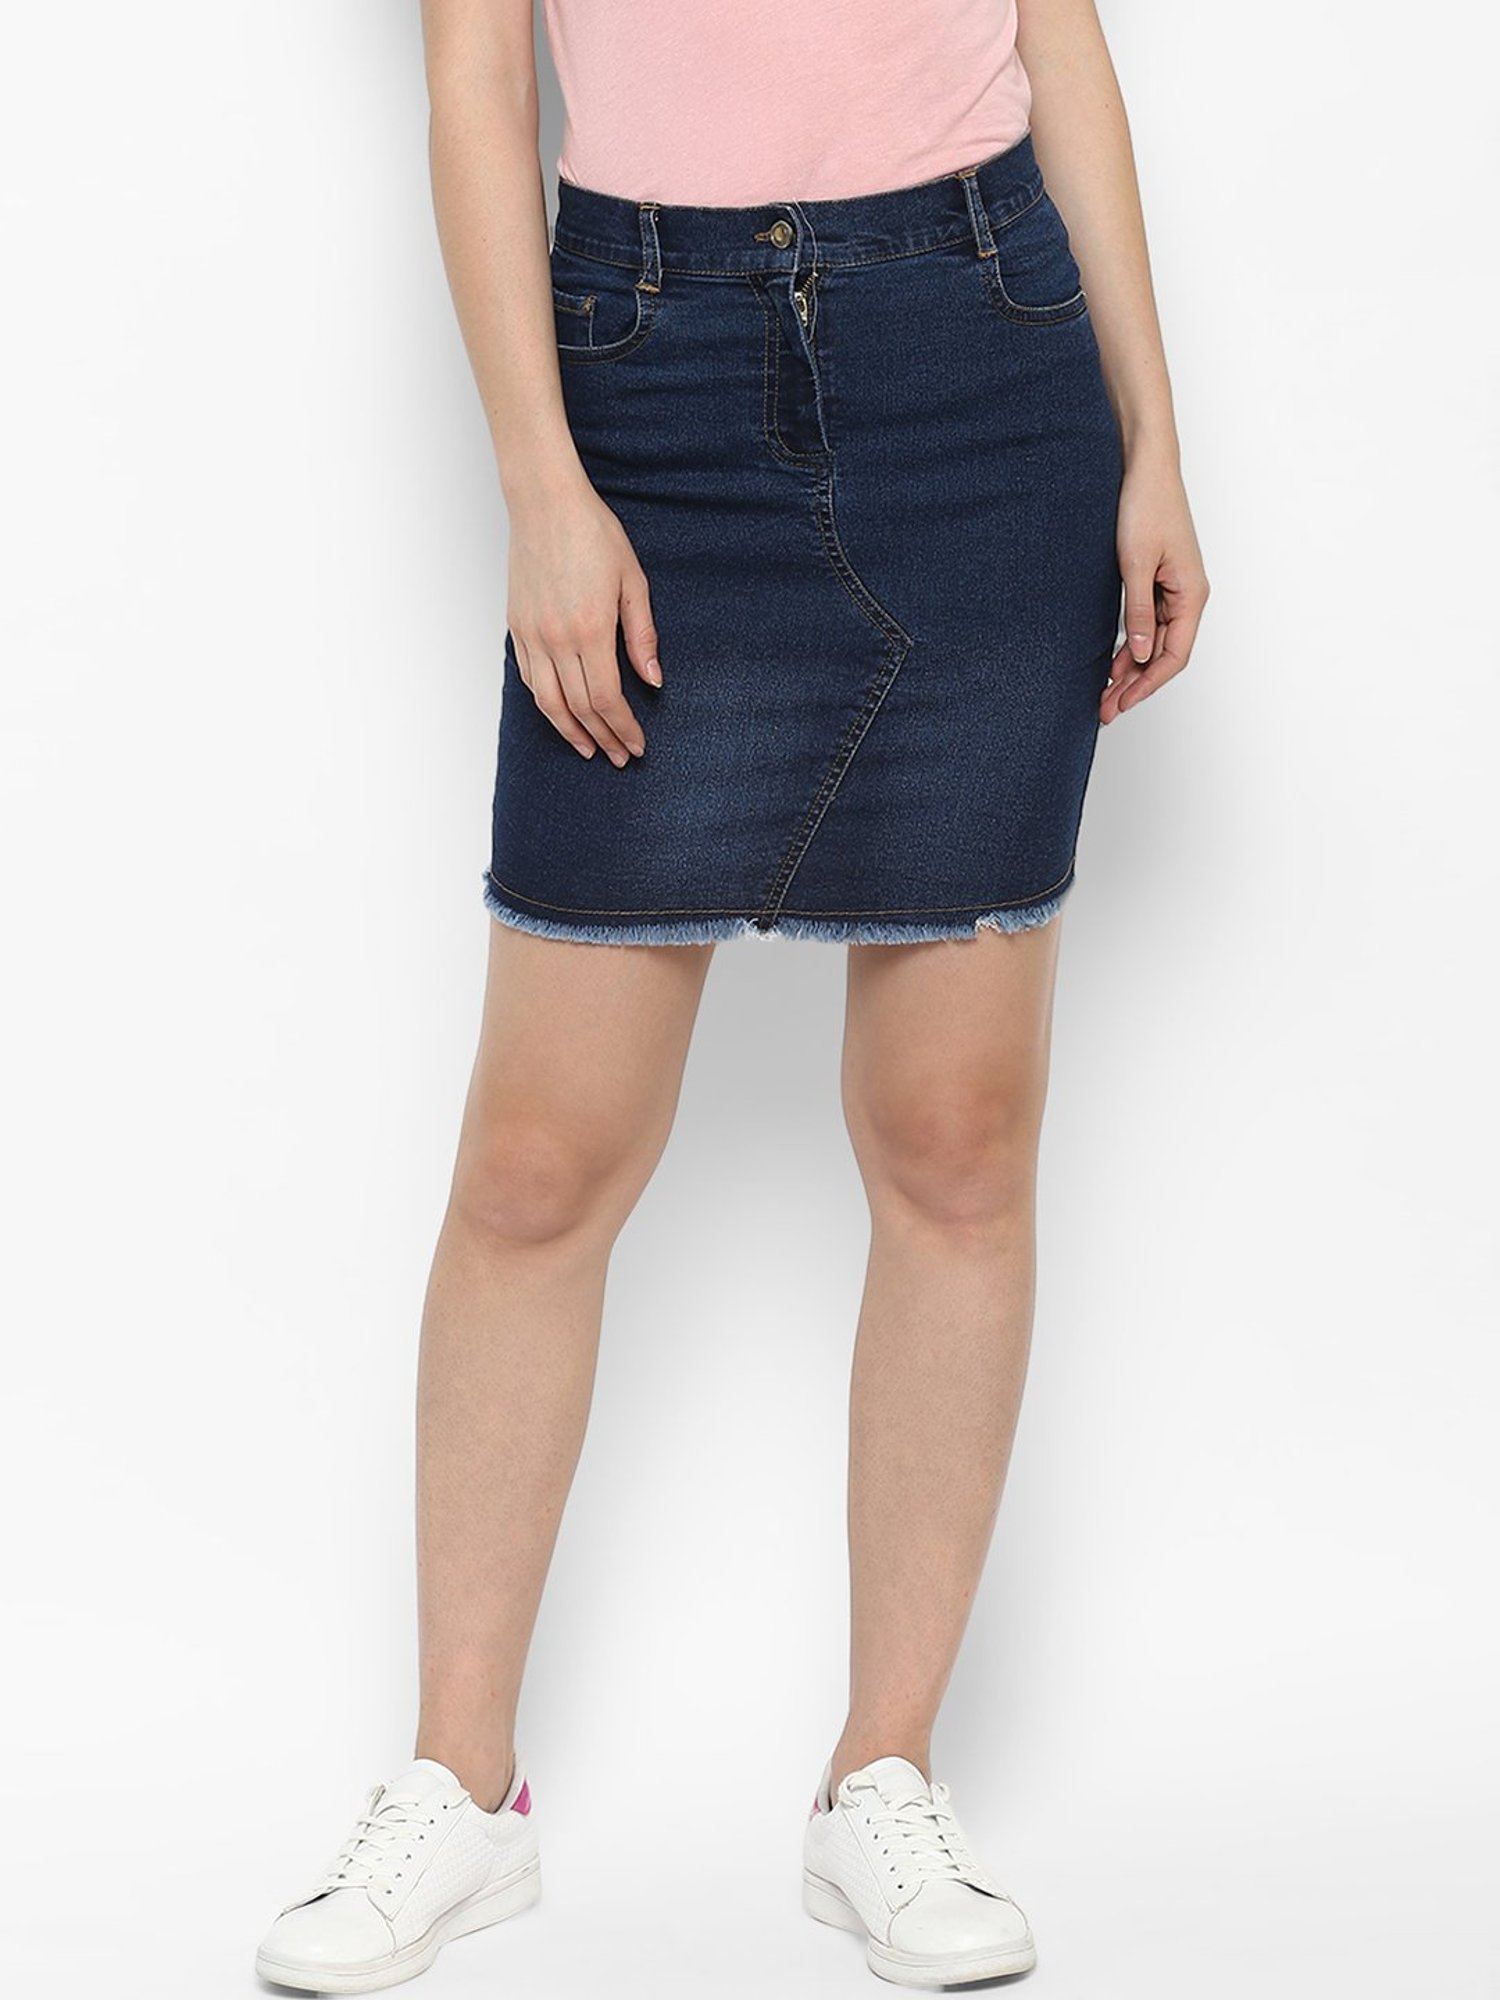 Buy Codaisy Knee Length Denim A-Line Blue Skirt (26) at Amazon.in